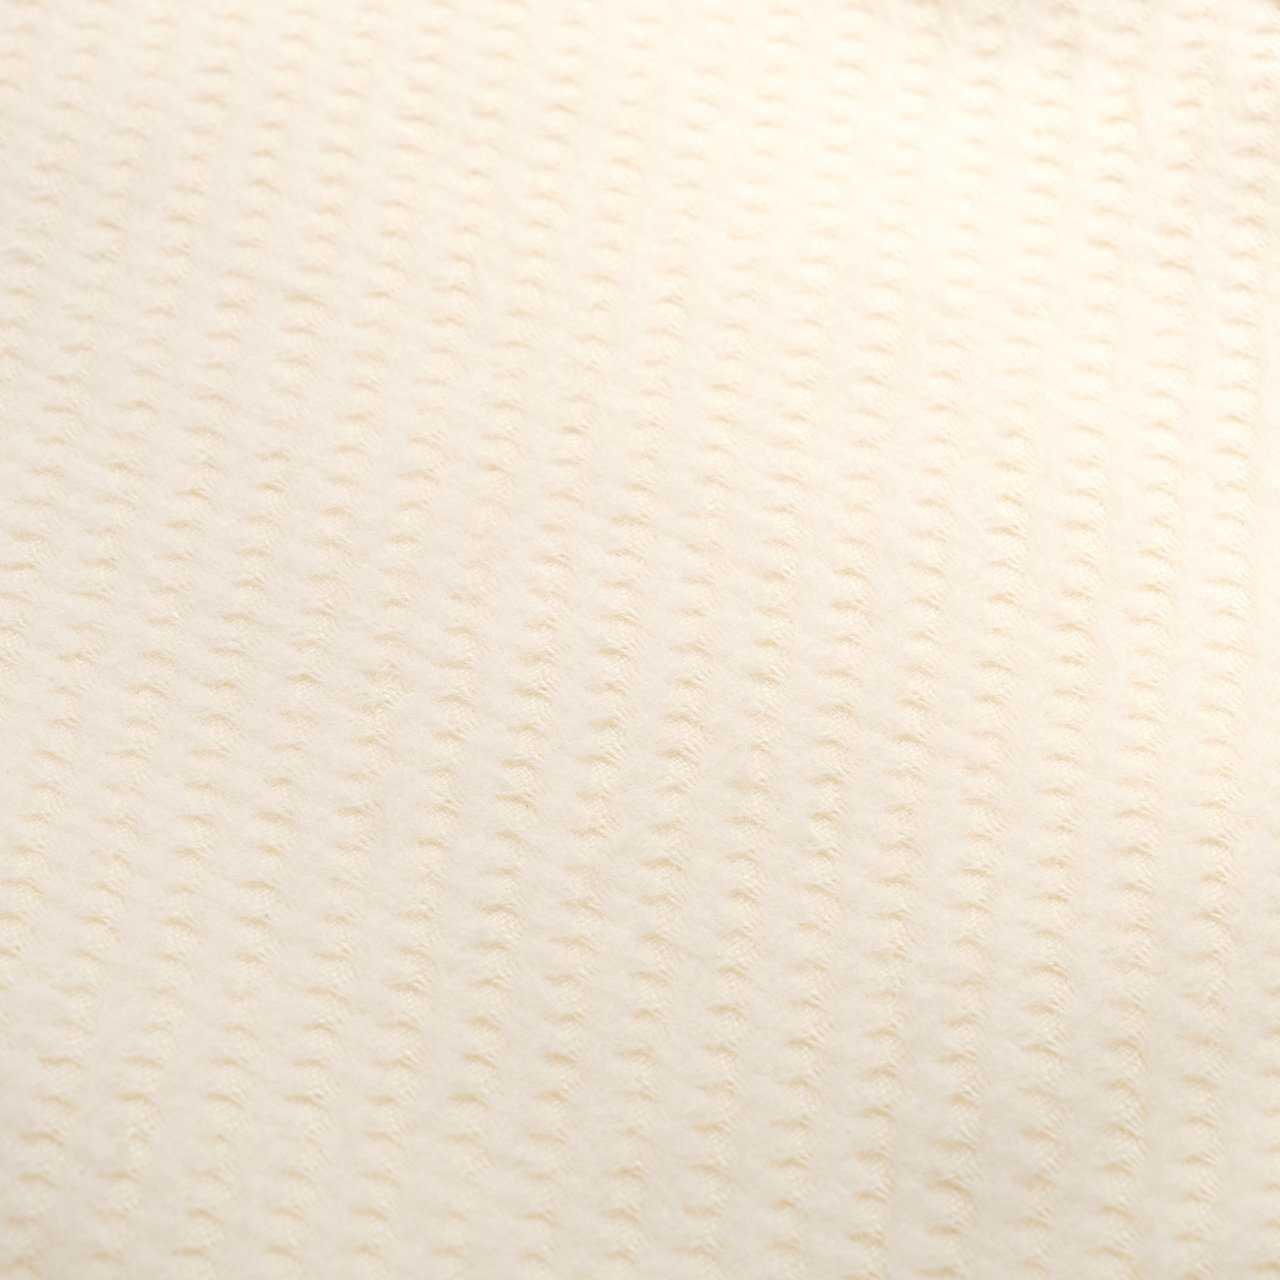 Japanese Organic Cotton Quarter-size Blanket (plain) | Taste of Japan